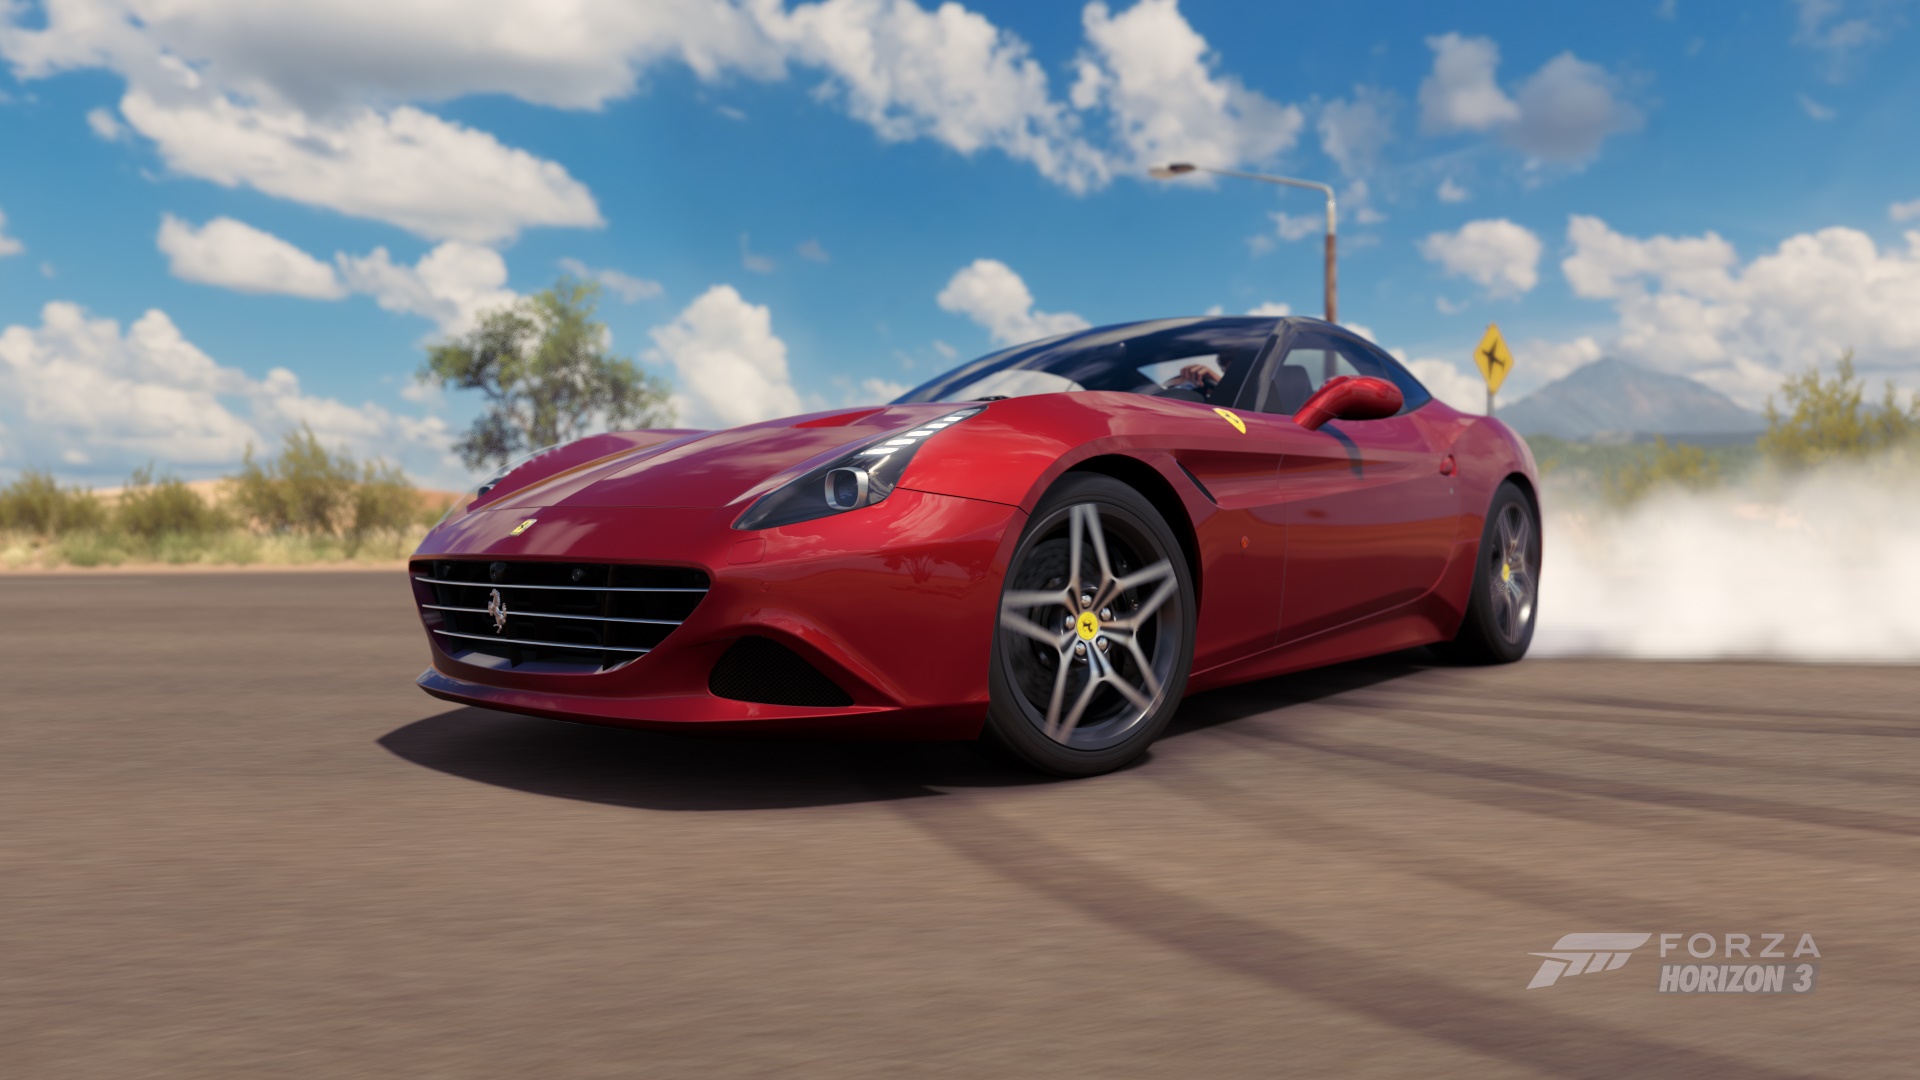 Wallpaper Ferrari California, Forza Horizon 3, sports car